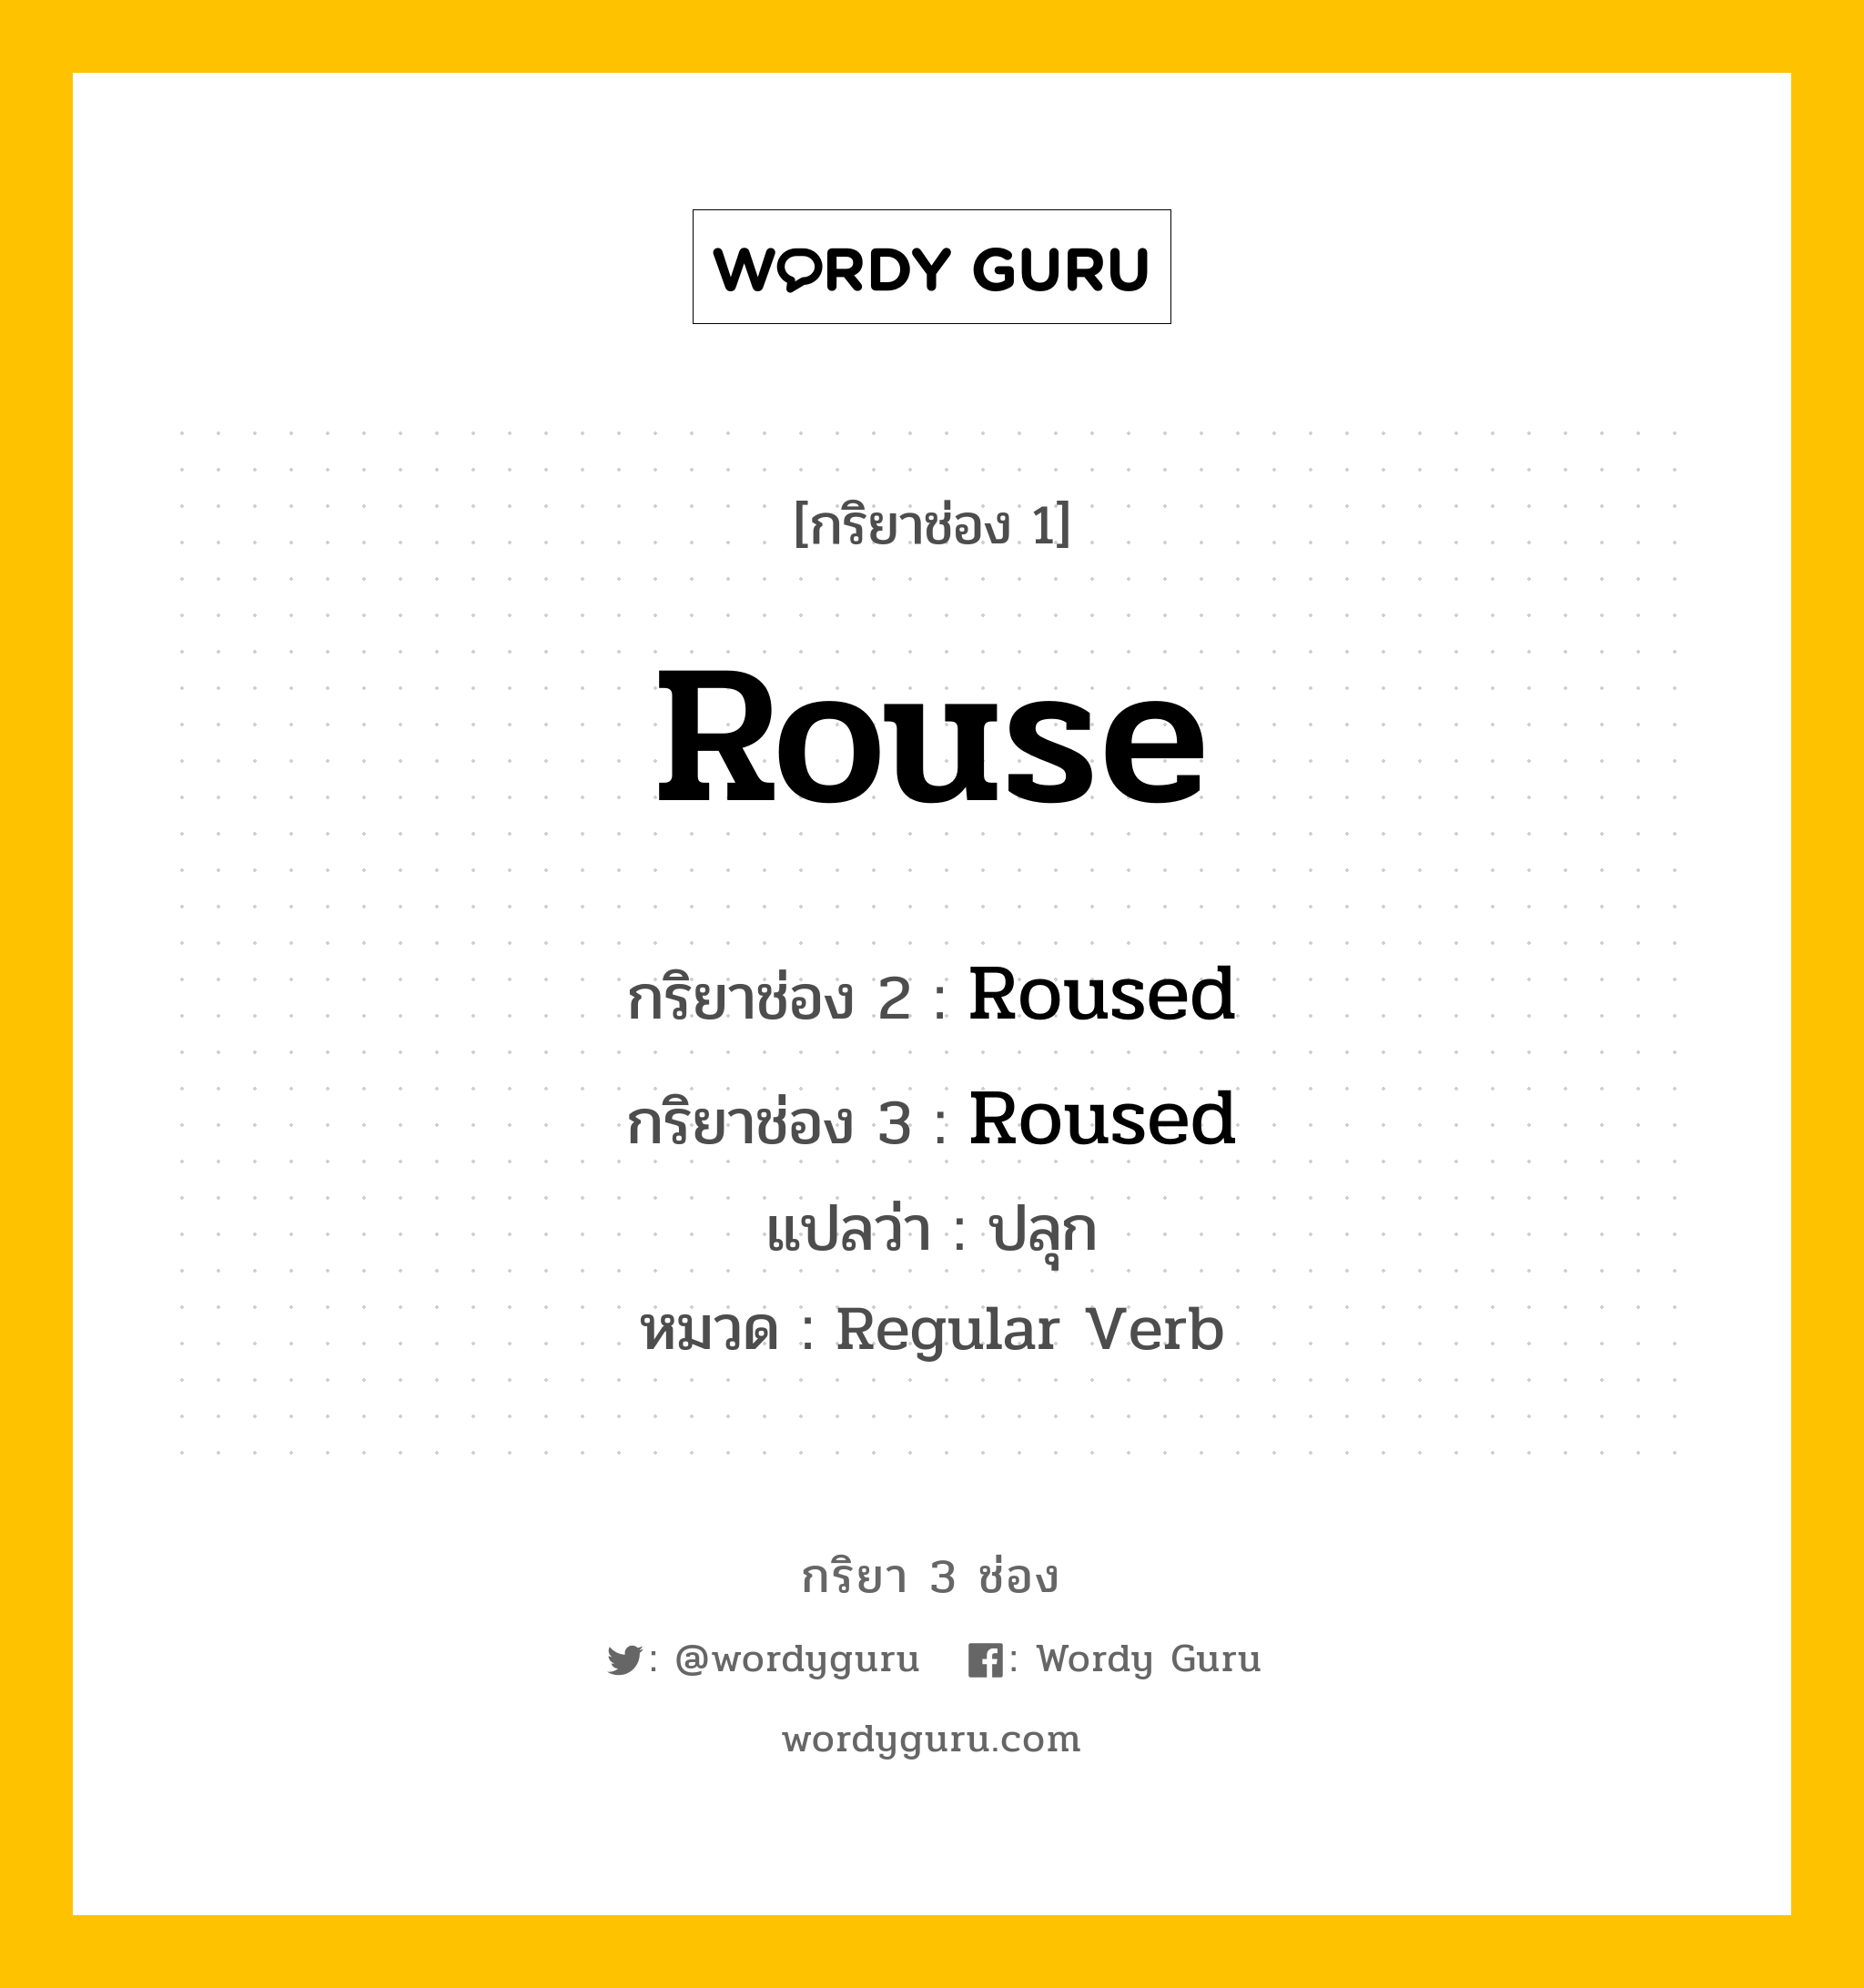 กริยา 3 ช่อง ของ Rouse คืออะไร? มาดูคำอ่าน คำแปลกันเลย, กริยาช่อง 1 Rouse กริยาช่อง 2 Roused กริยาช่อง 3 Roused แปลว่า ปลุก หมวด Regular Verb หมวด Regular Verb